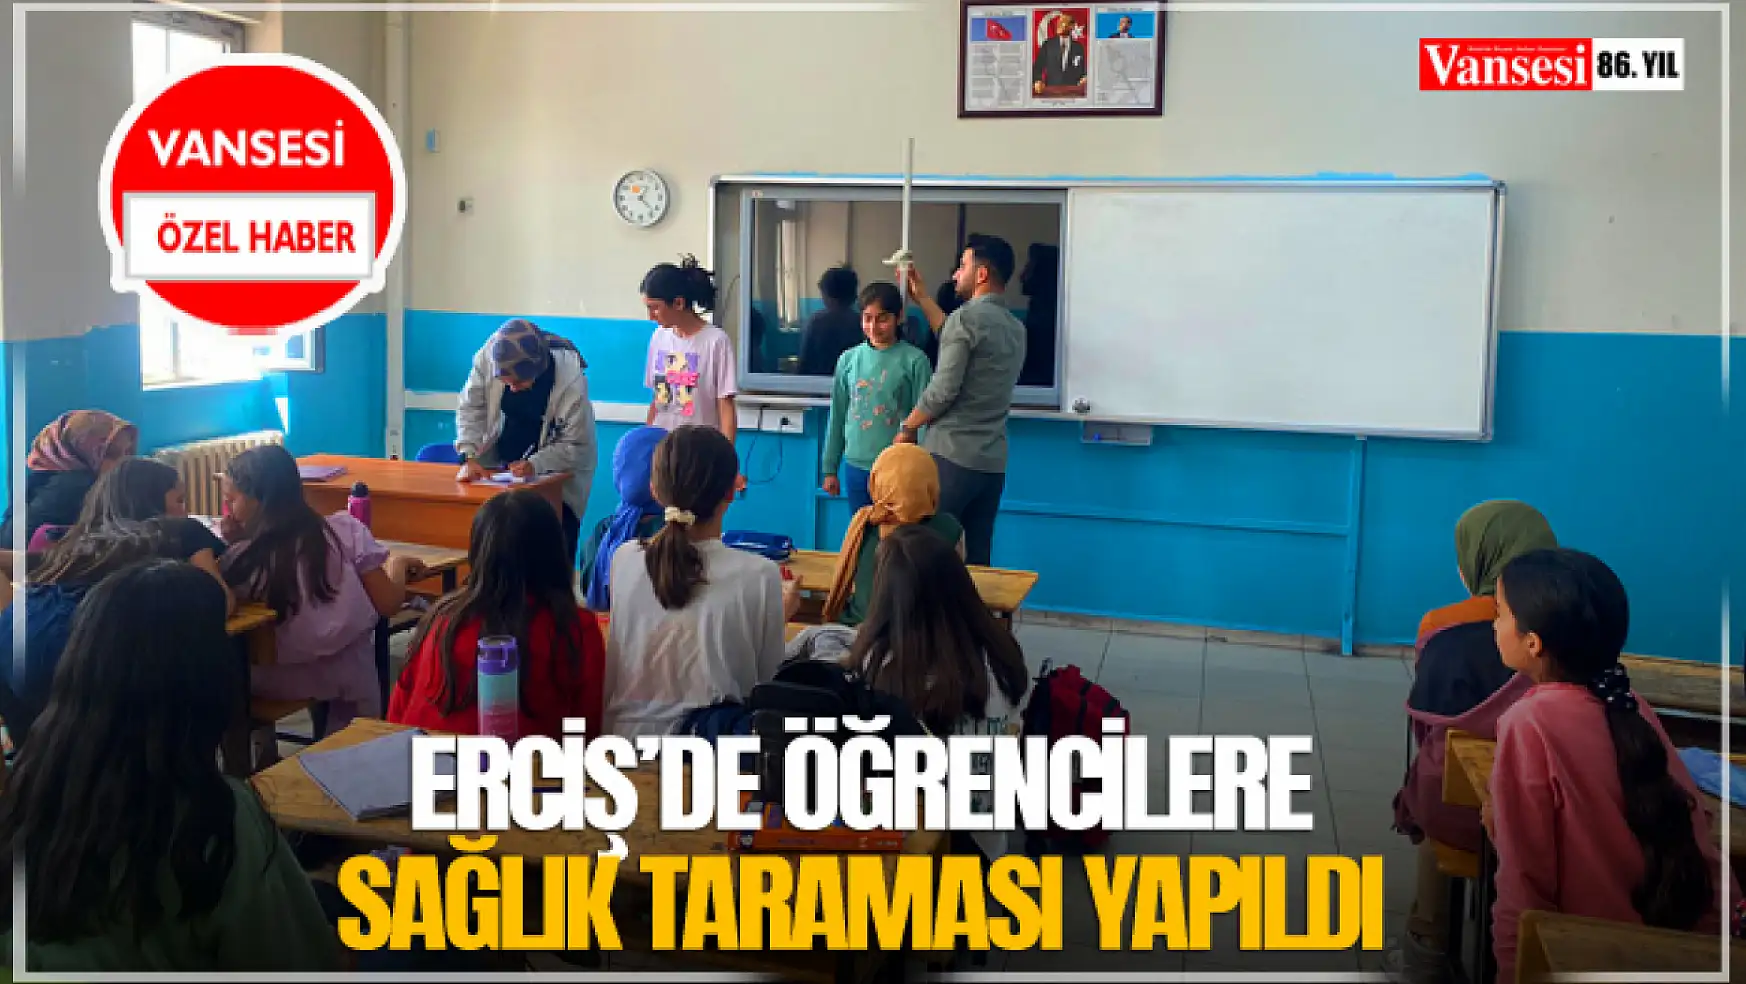 Erciş'de öğrencilere sağlık taraması yapıldı